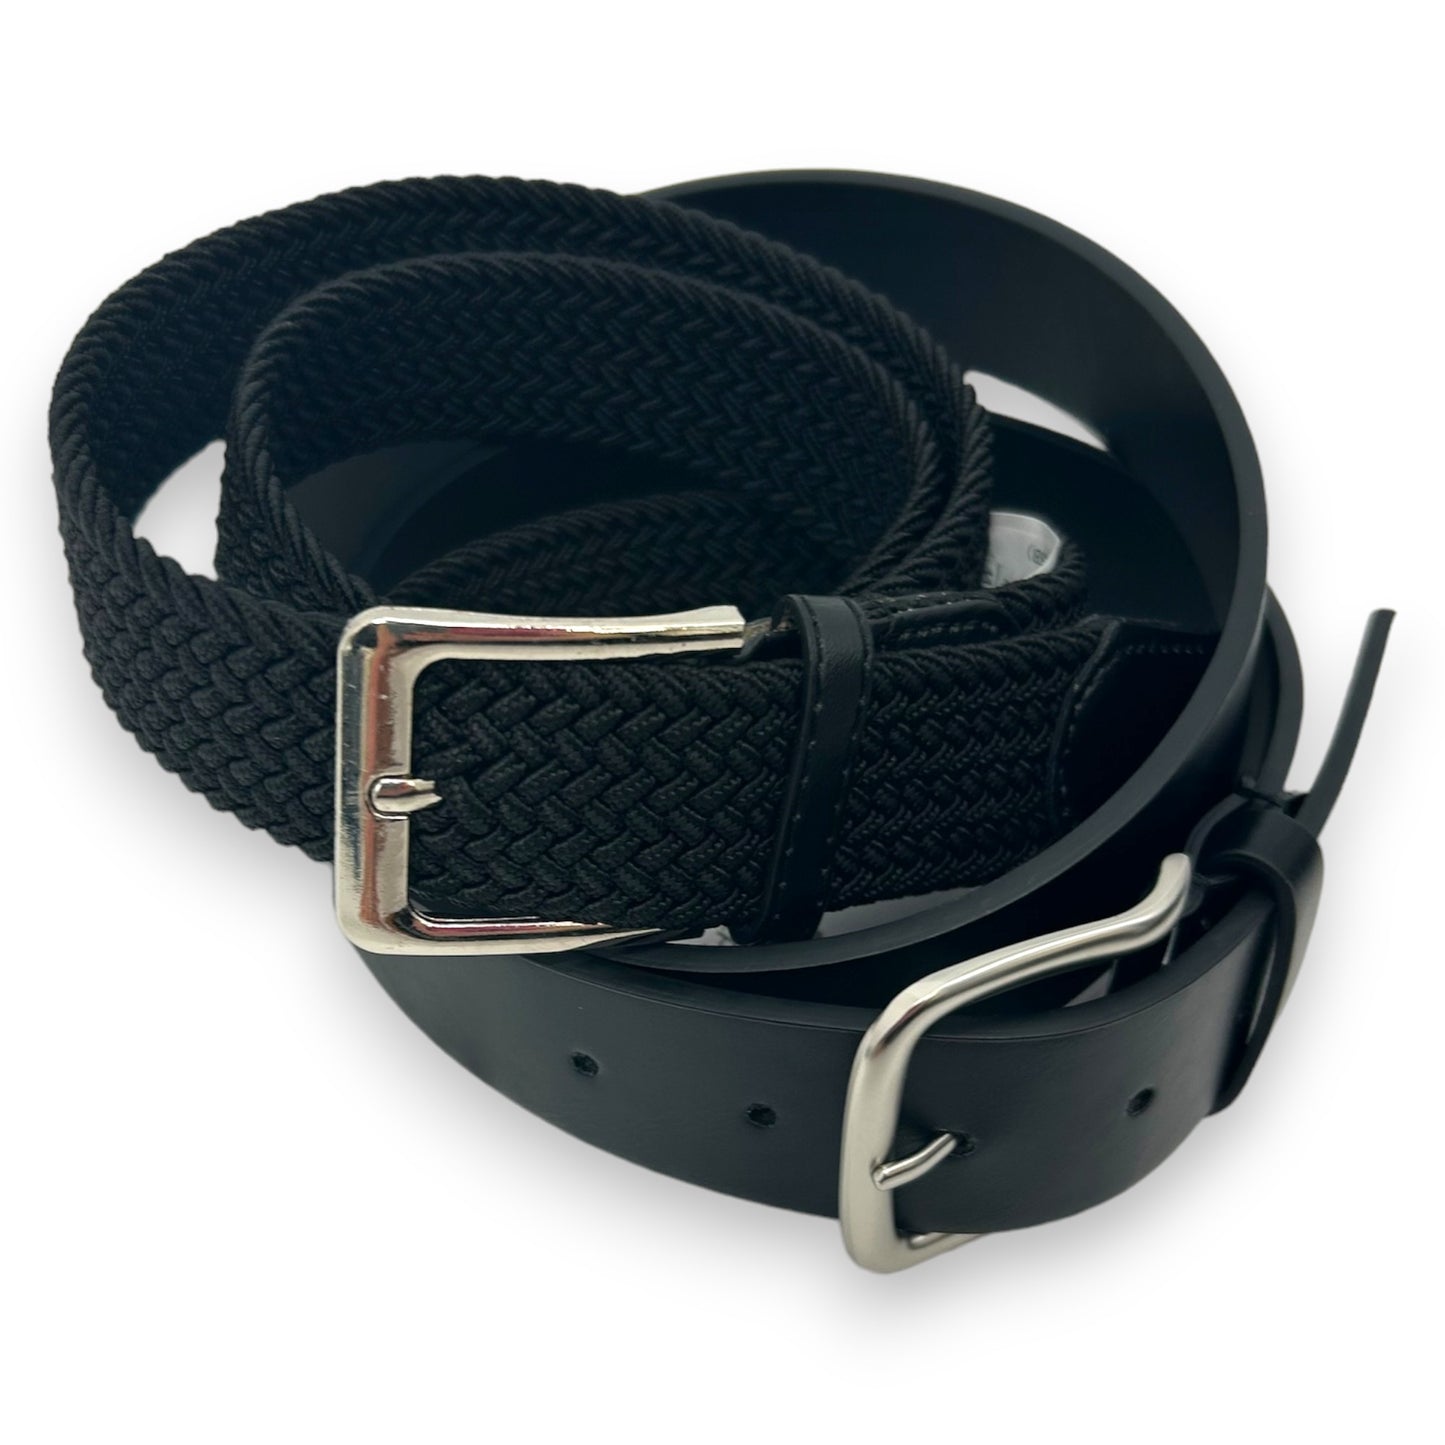 Riemen 2 pack - 2stuks - elastiek zwart - zwart vegan leather - Safekeepers